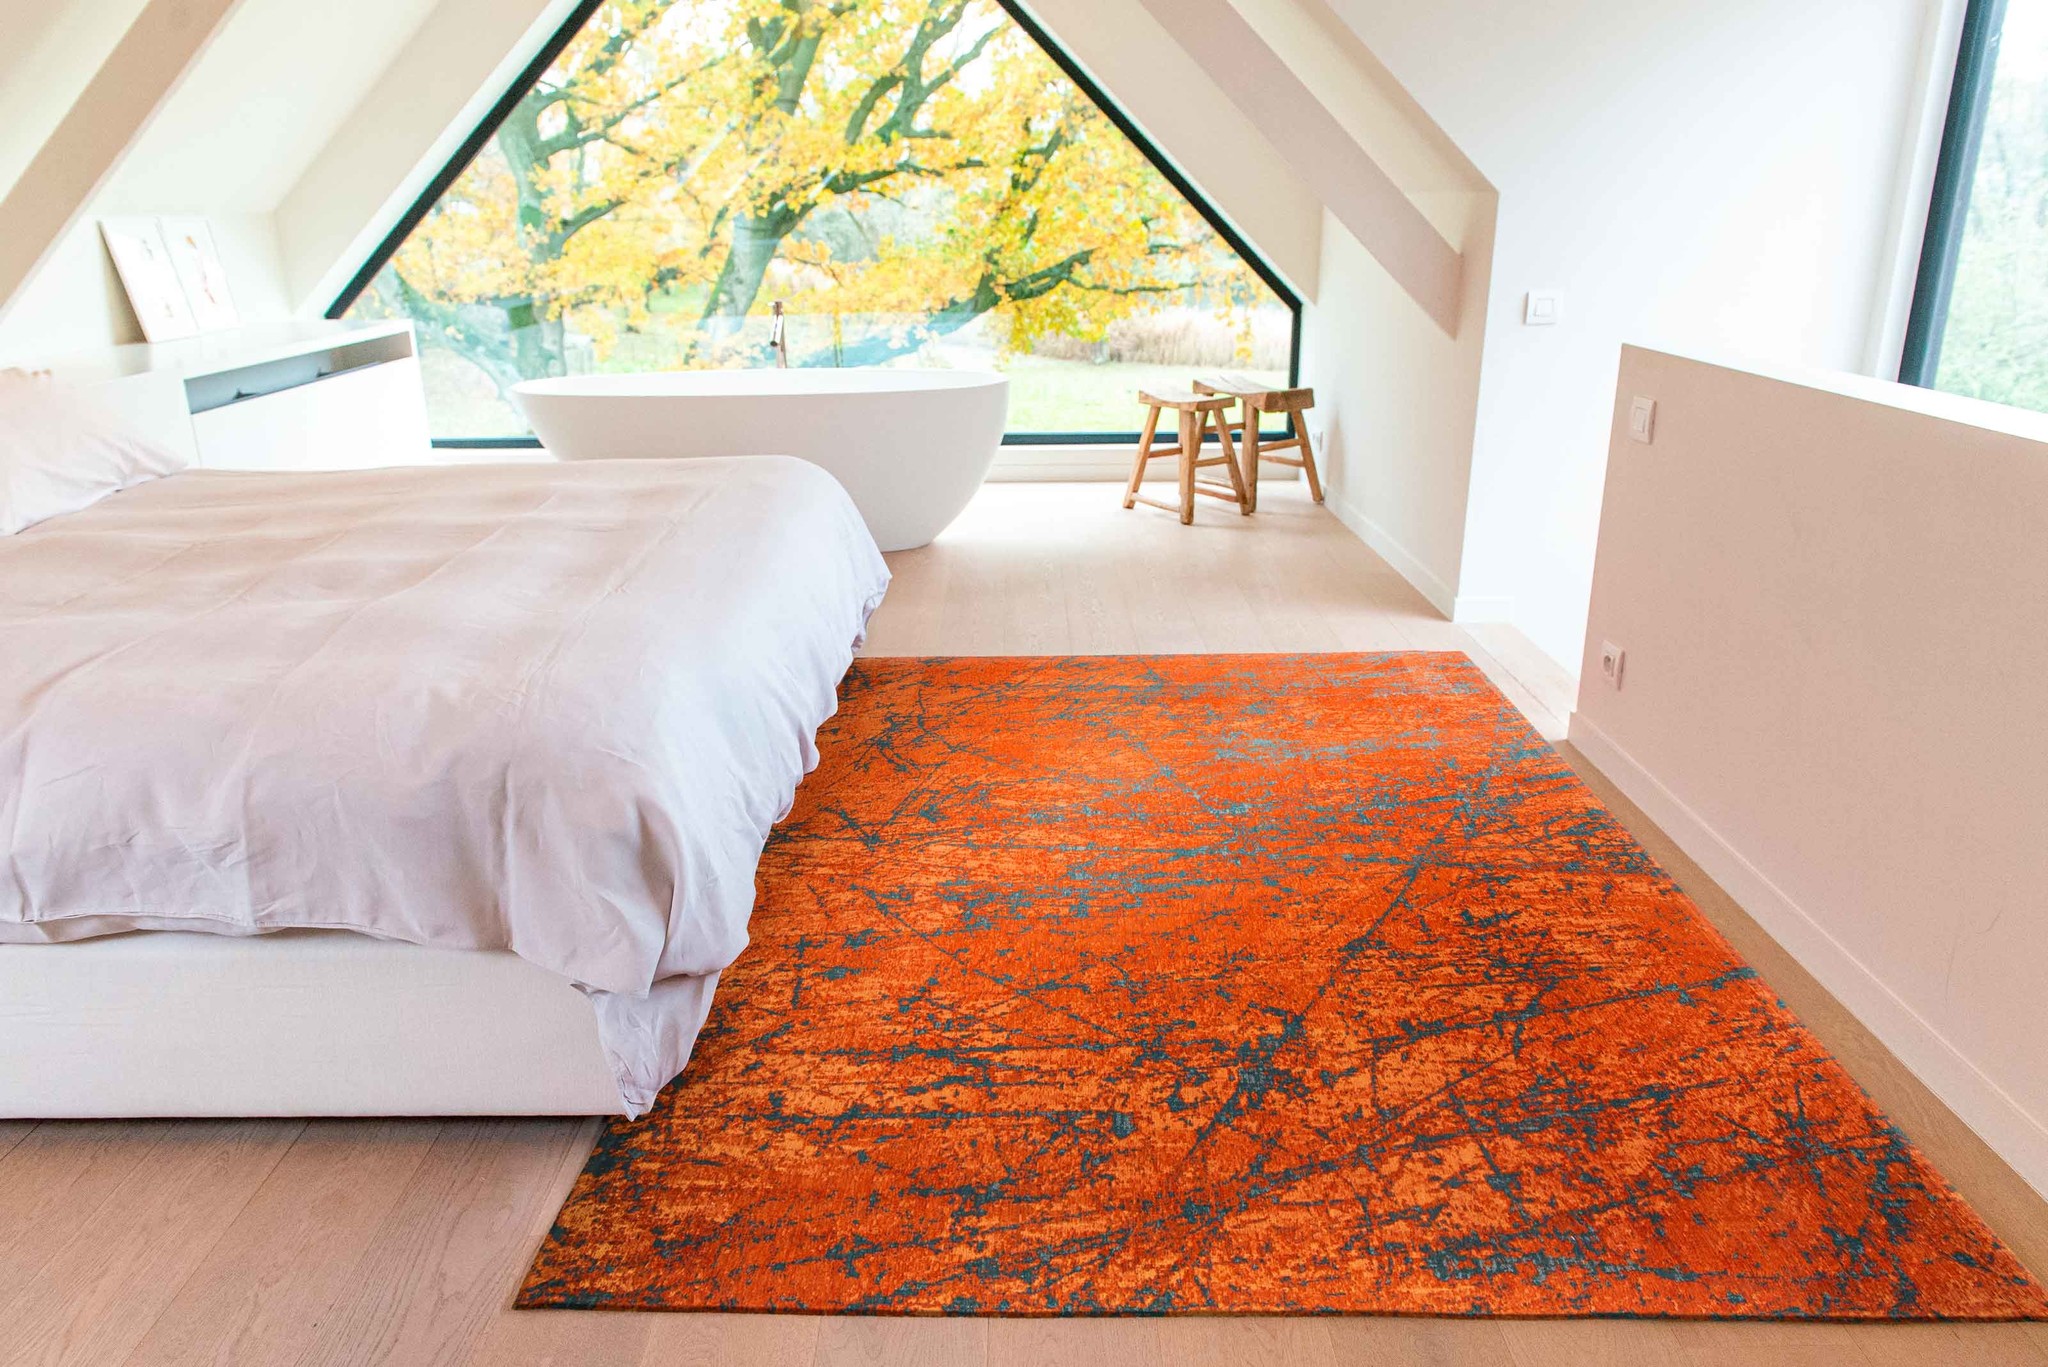 Art Orange Belgian Rug ☞ Size: 7' 7" x 11' (230 x 330 cm)